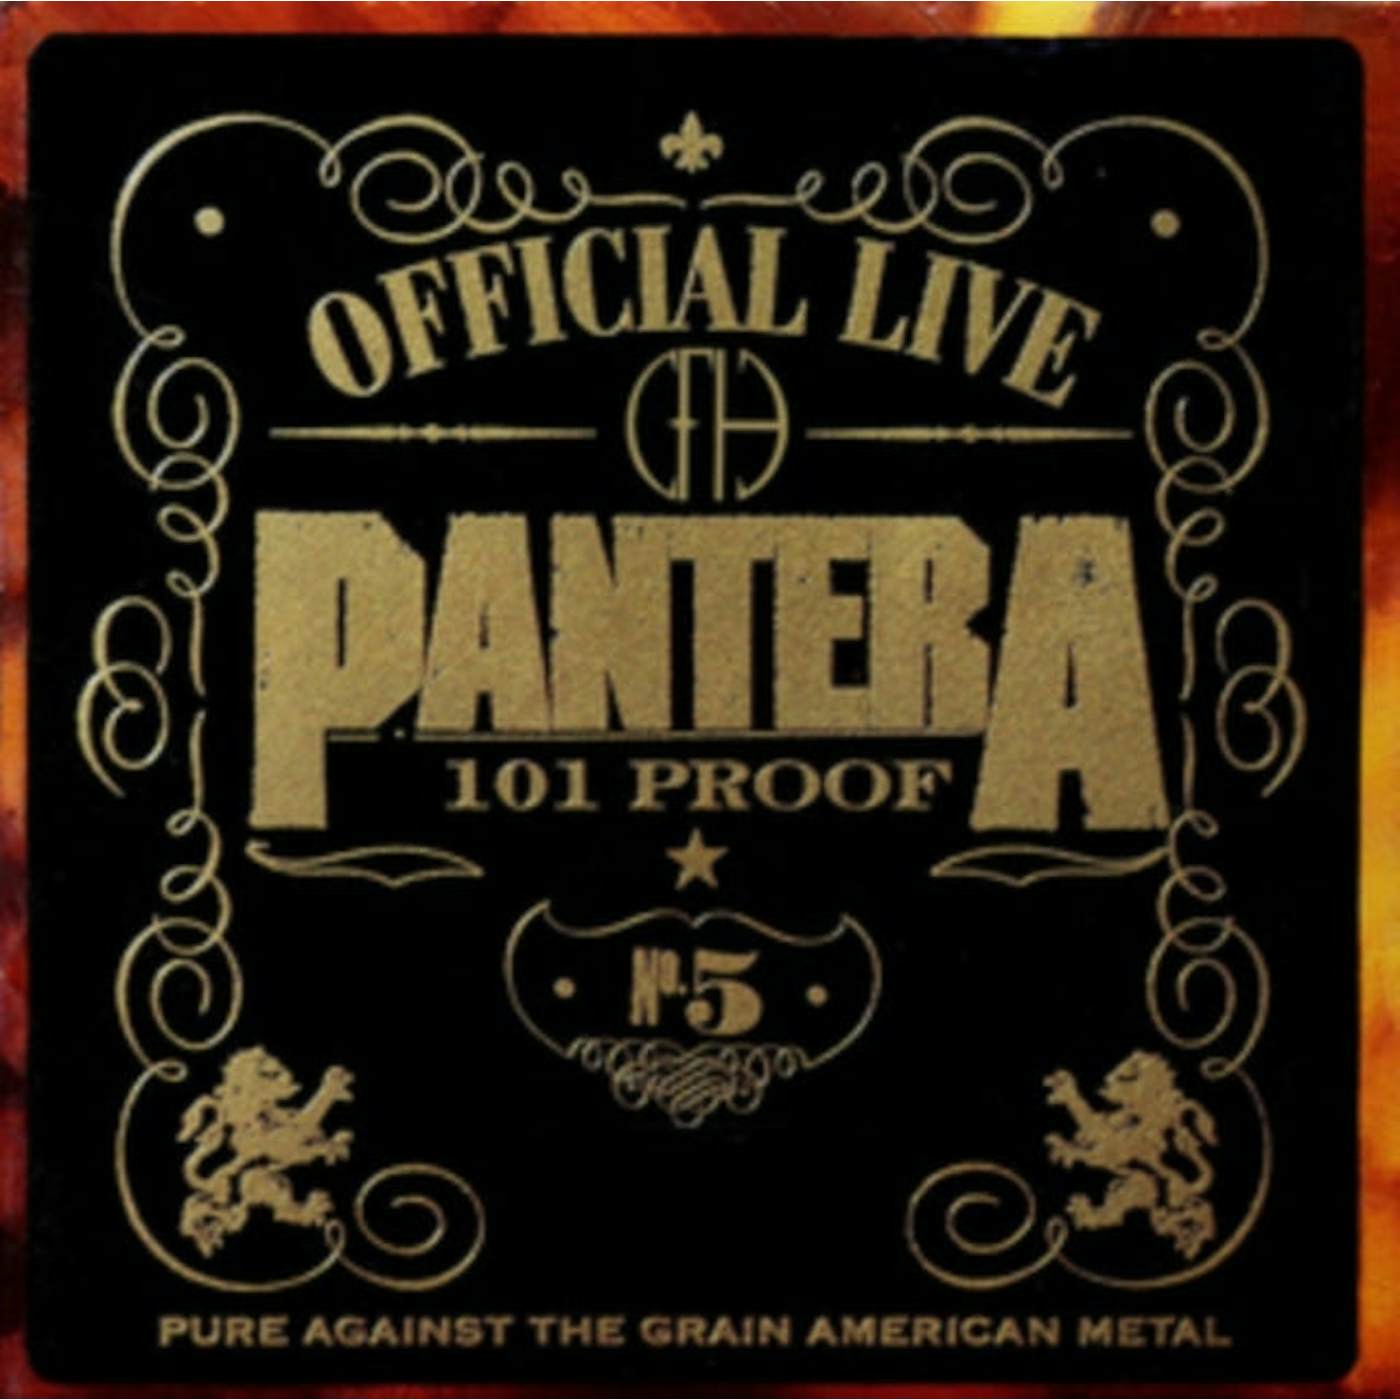 Pantera LP Vinyl Record - Official Live - 10 1 Proof